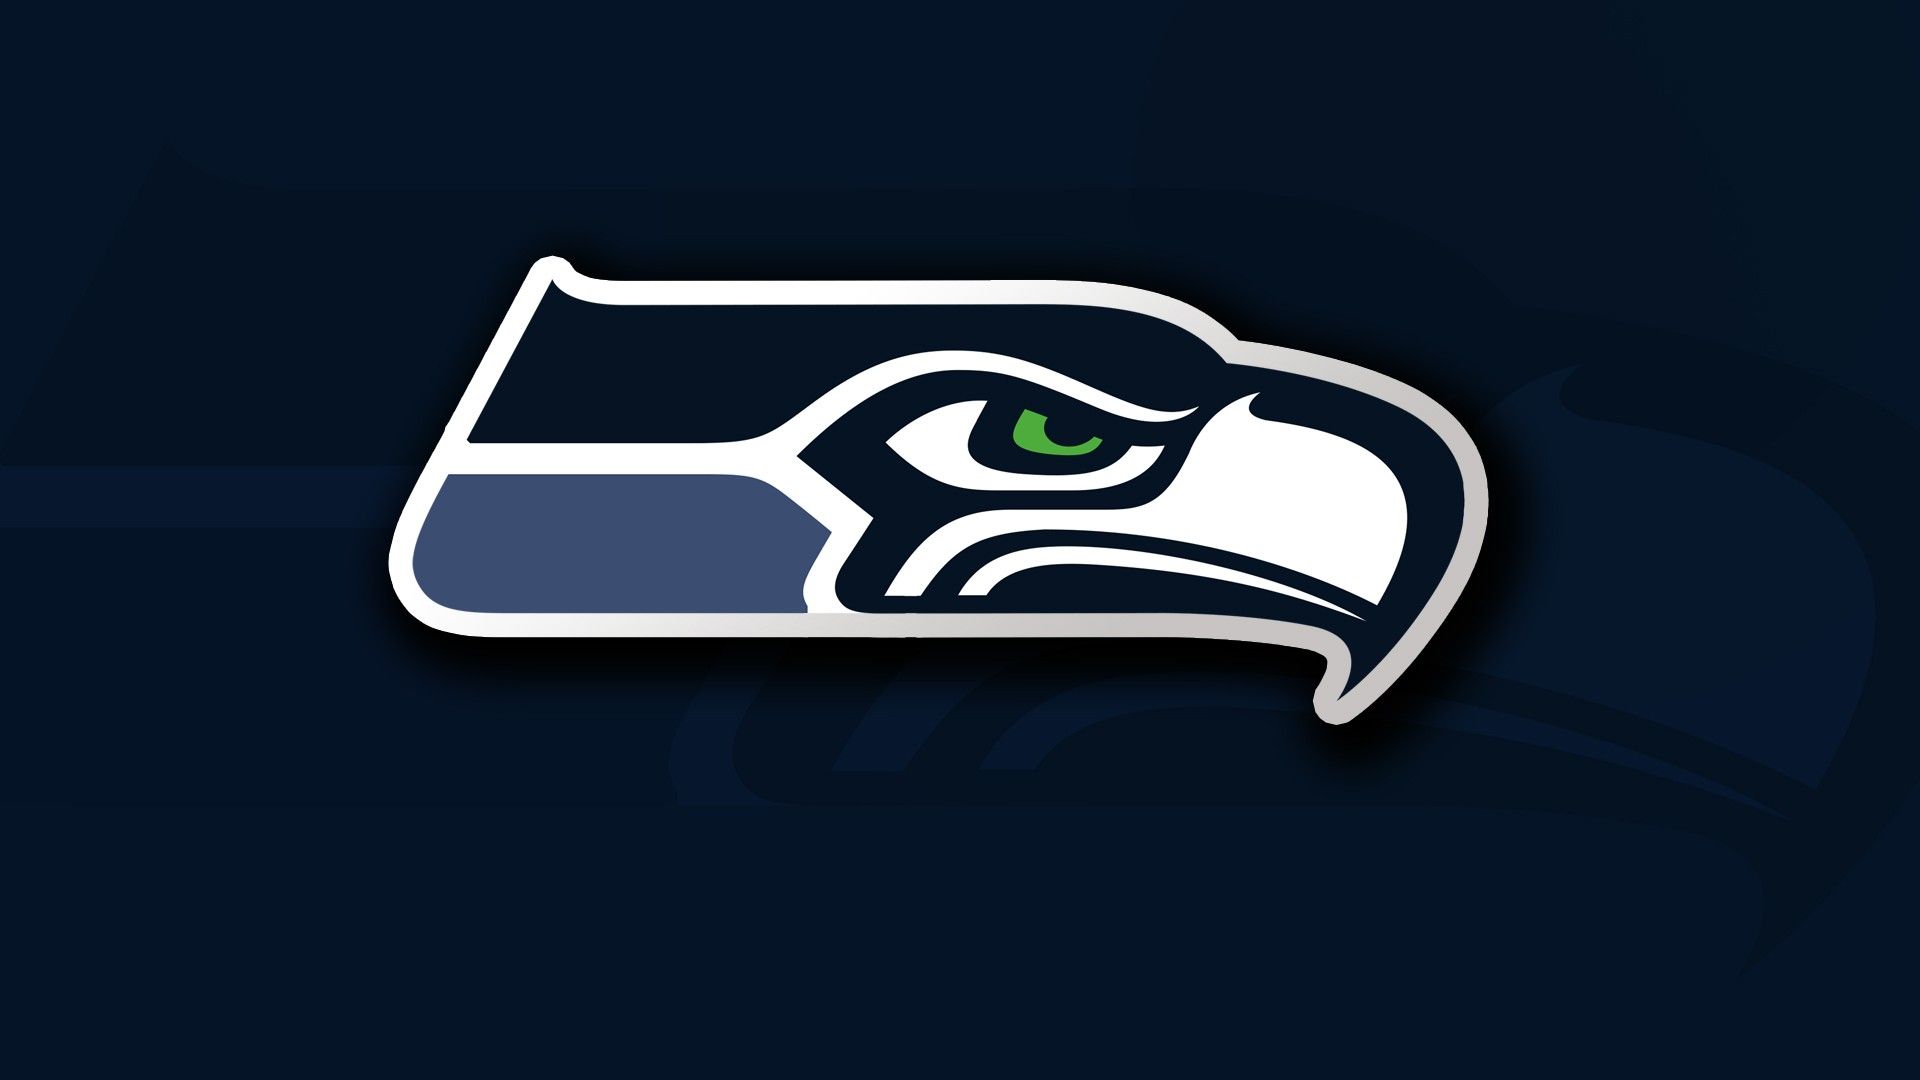 Logo Seattle Seahawks , HD Wallpaper & Backgrounds